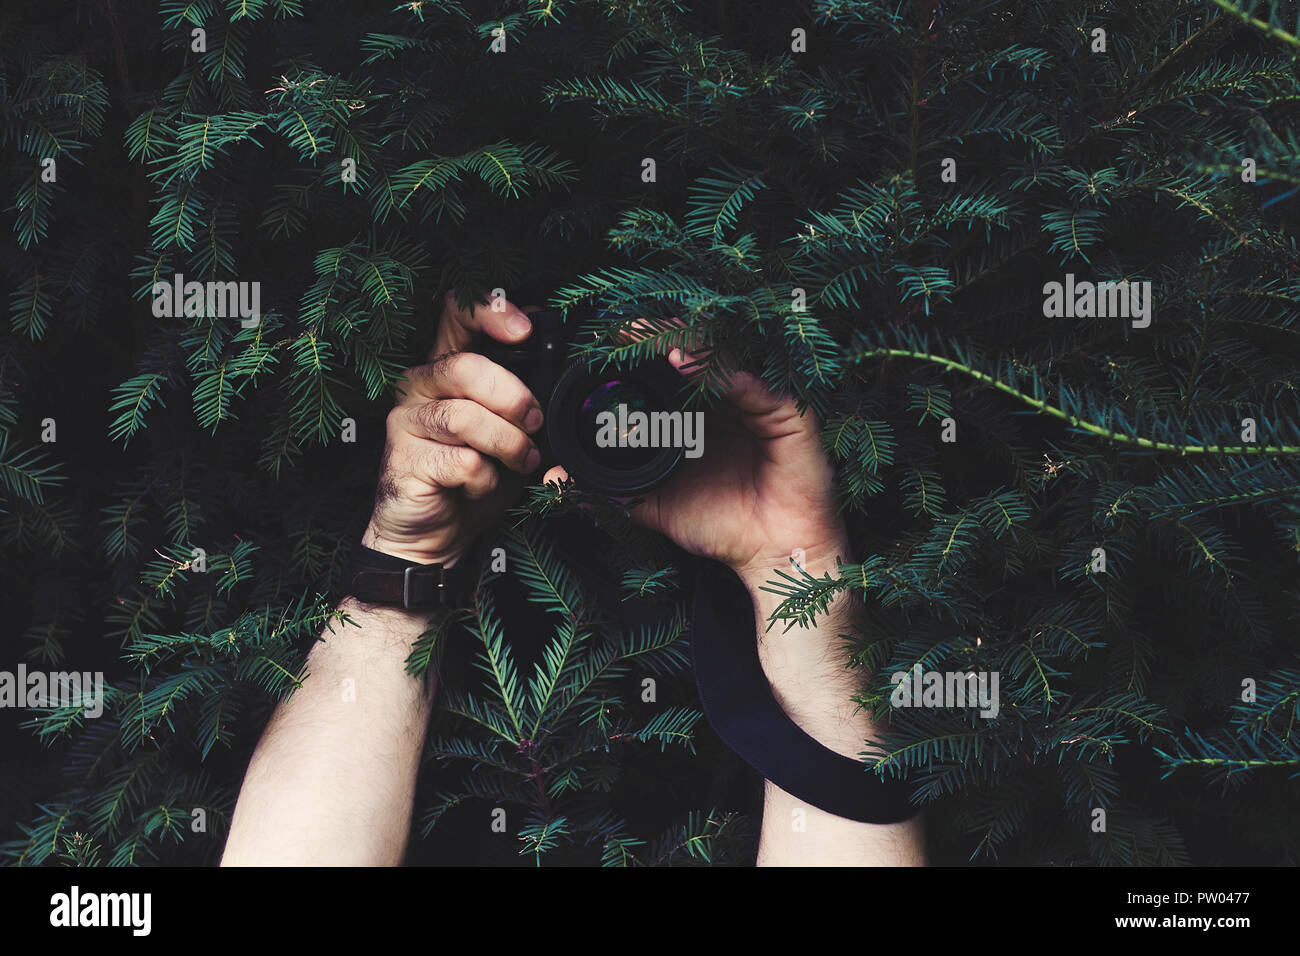 Mann im Dunkel der Nadelbaum Baum versteckt, die Kamera in den Händen und Aufnehmen von Bildern Stockfoto